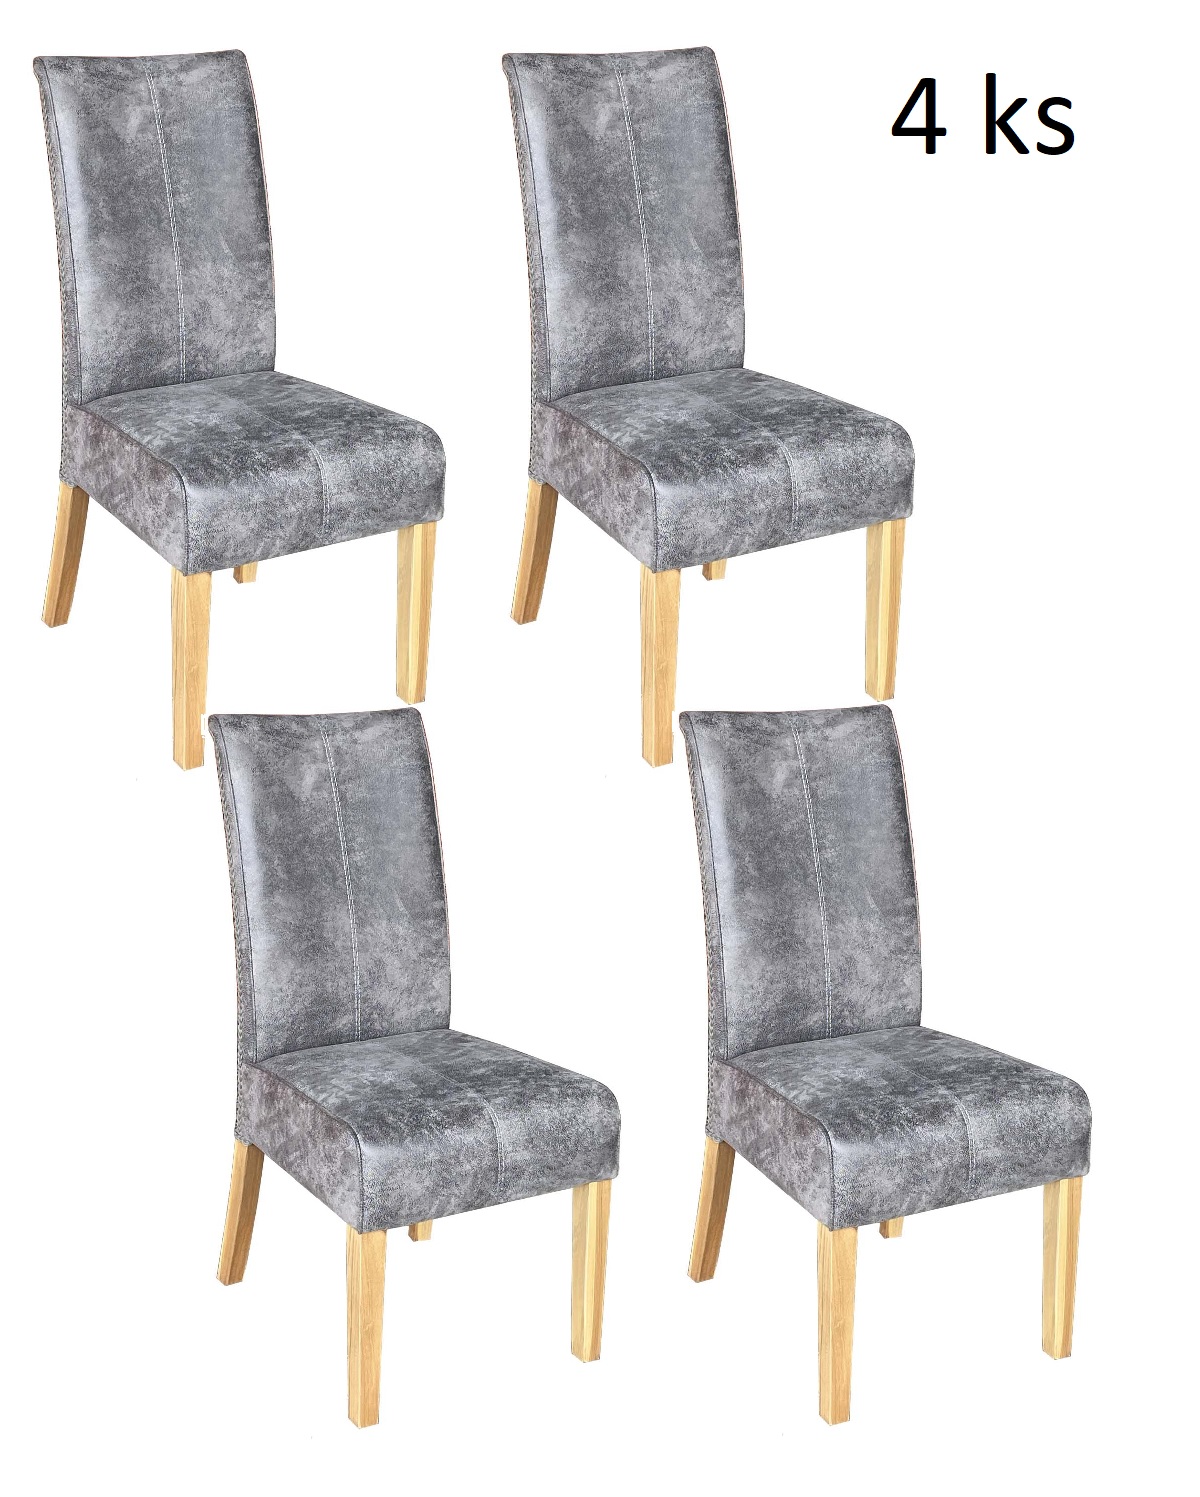 Jídelní židle CHESTER grey - sada 4 kusy - Masiv